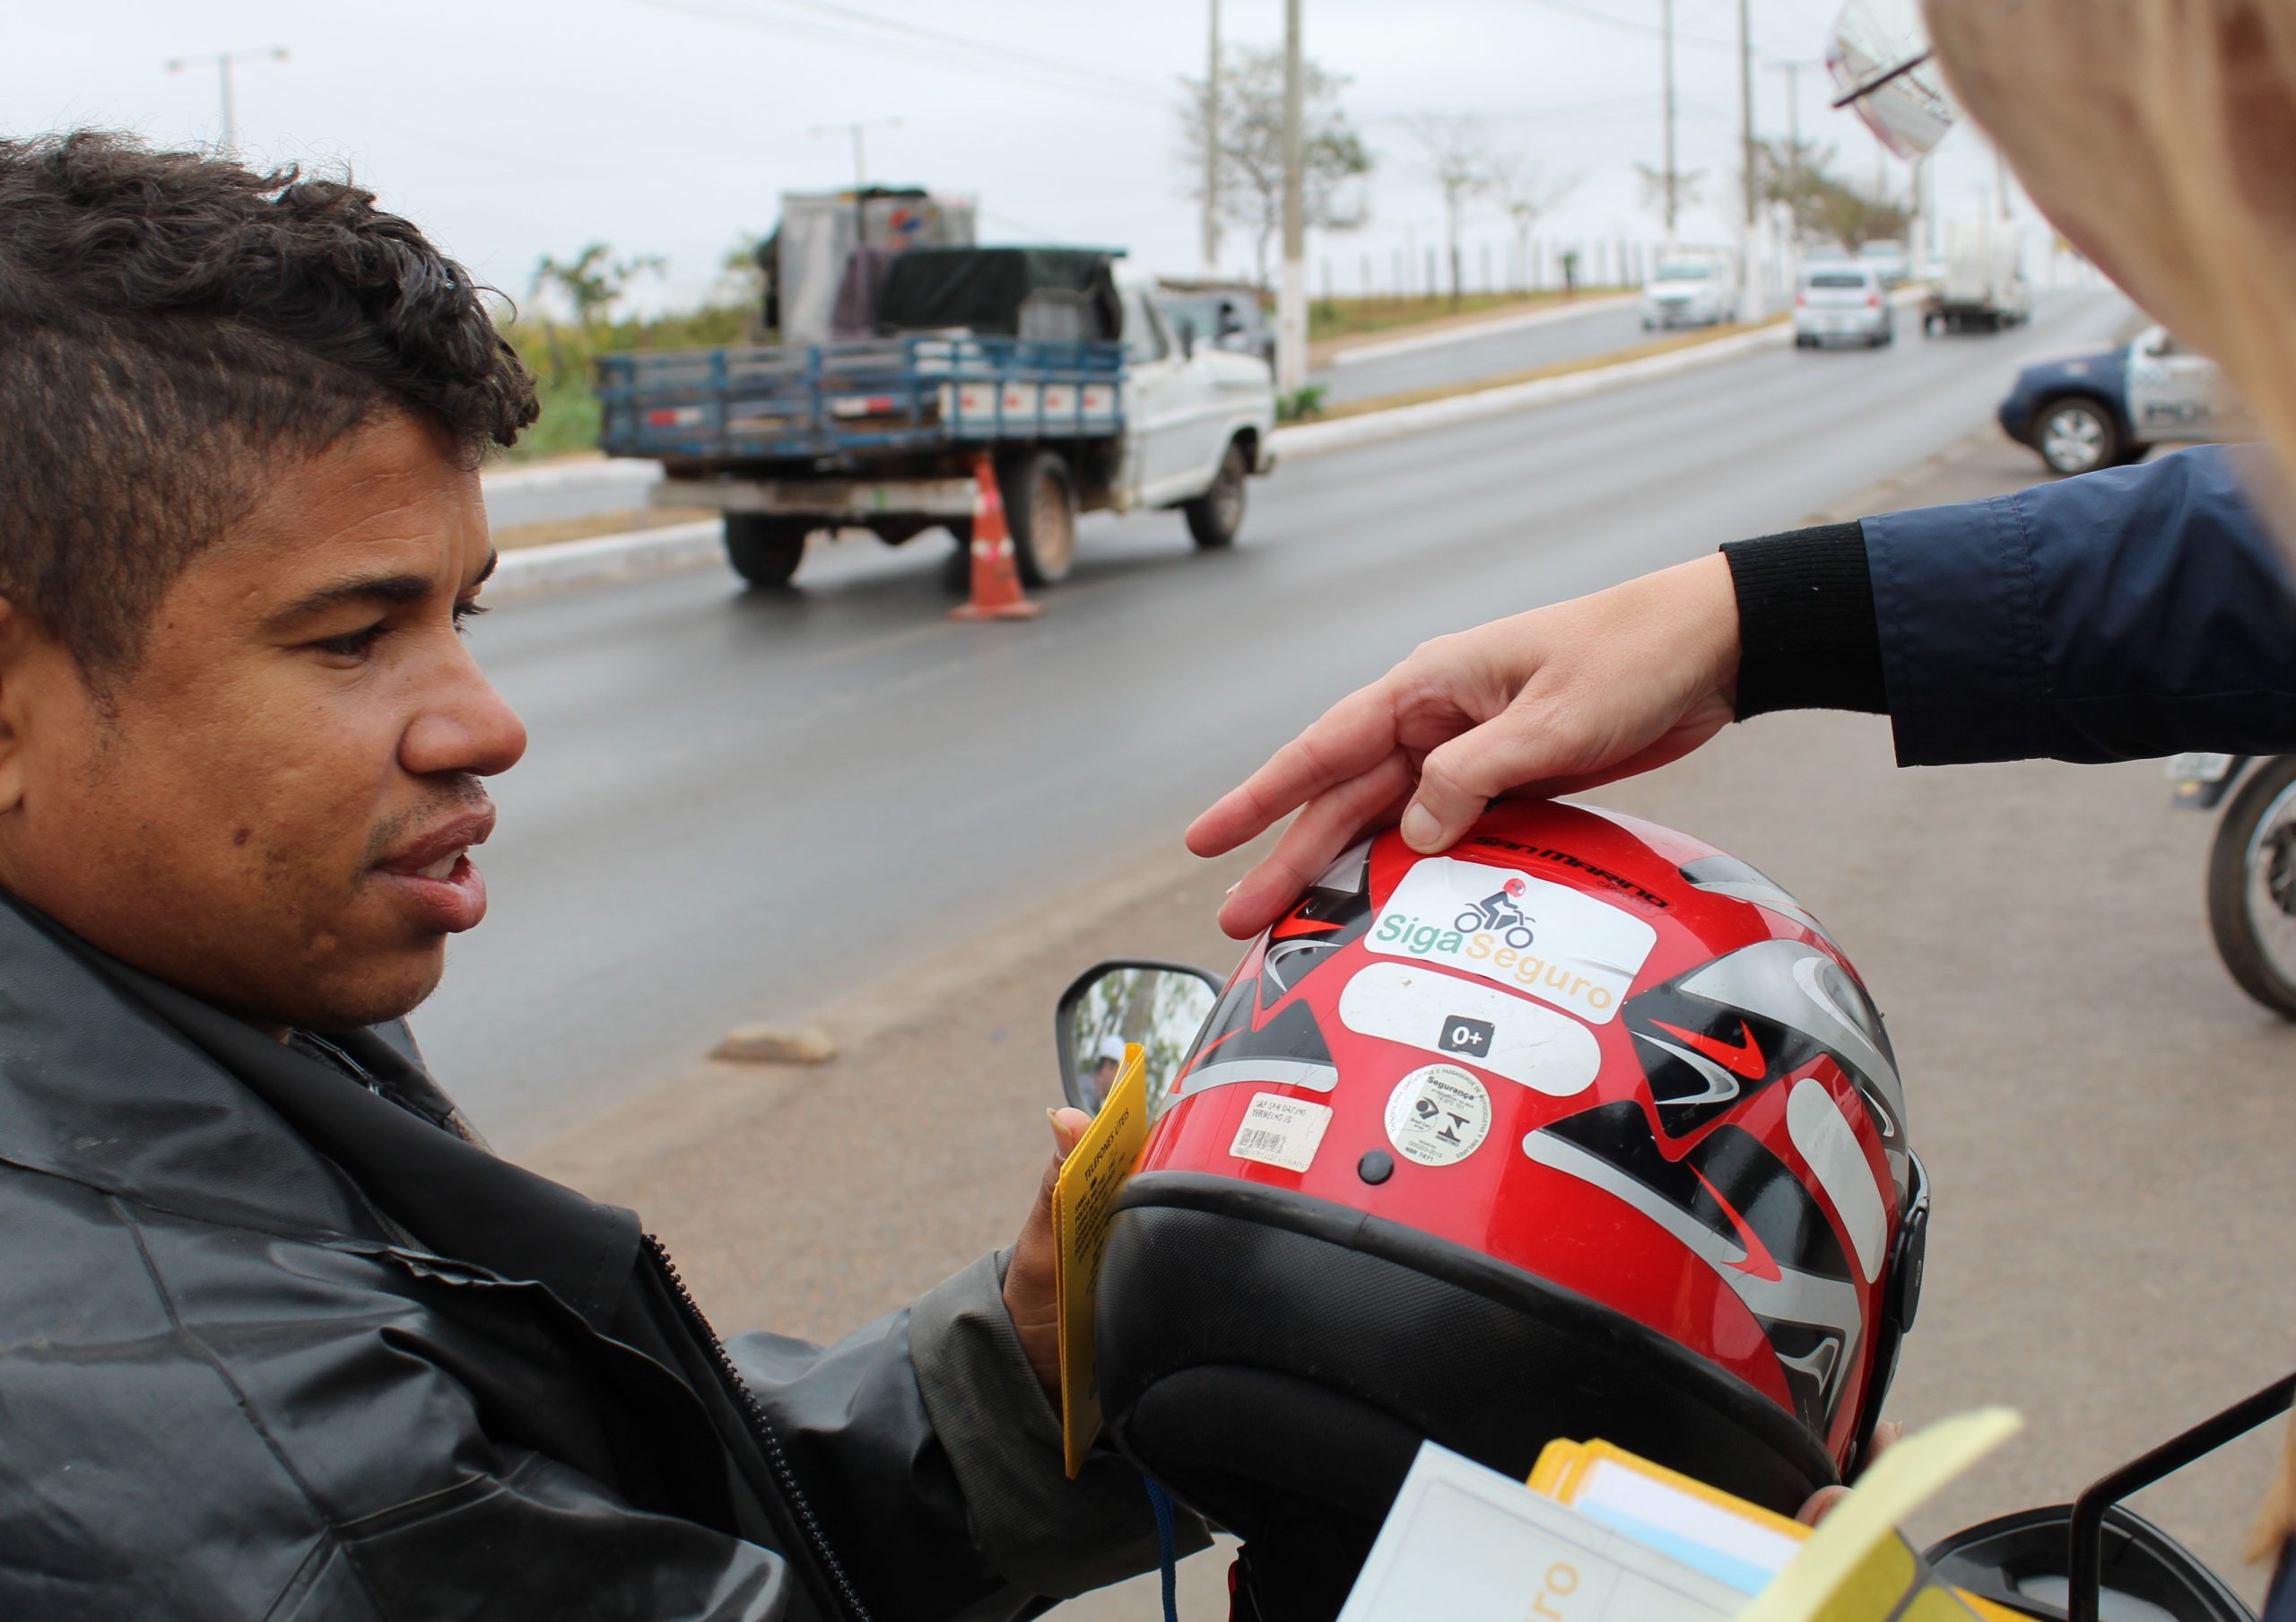 Detran-MT realiza ações educativas em comemoração ao Dia Nacional do Motociclista